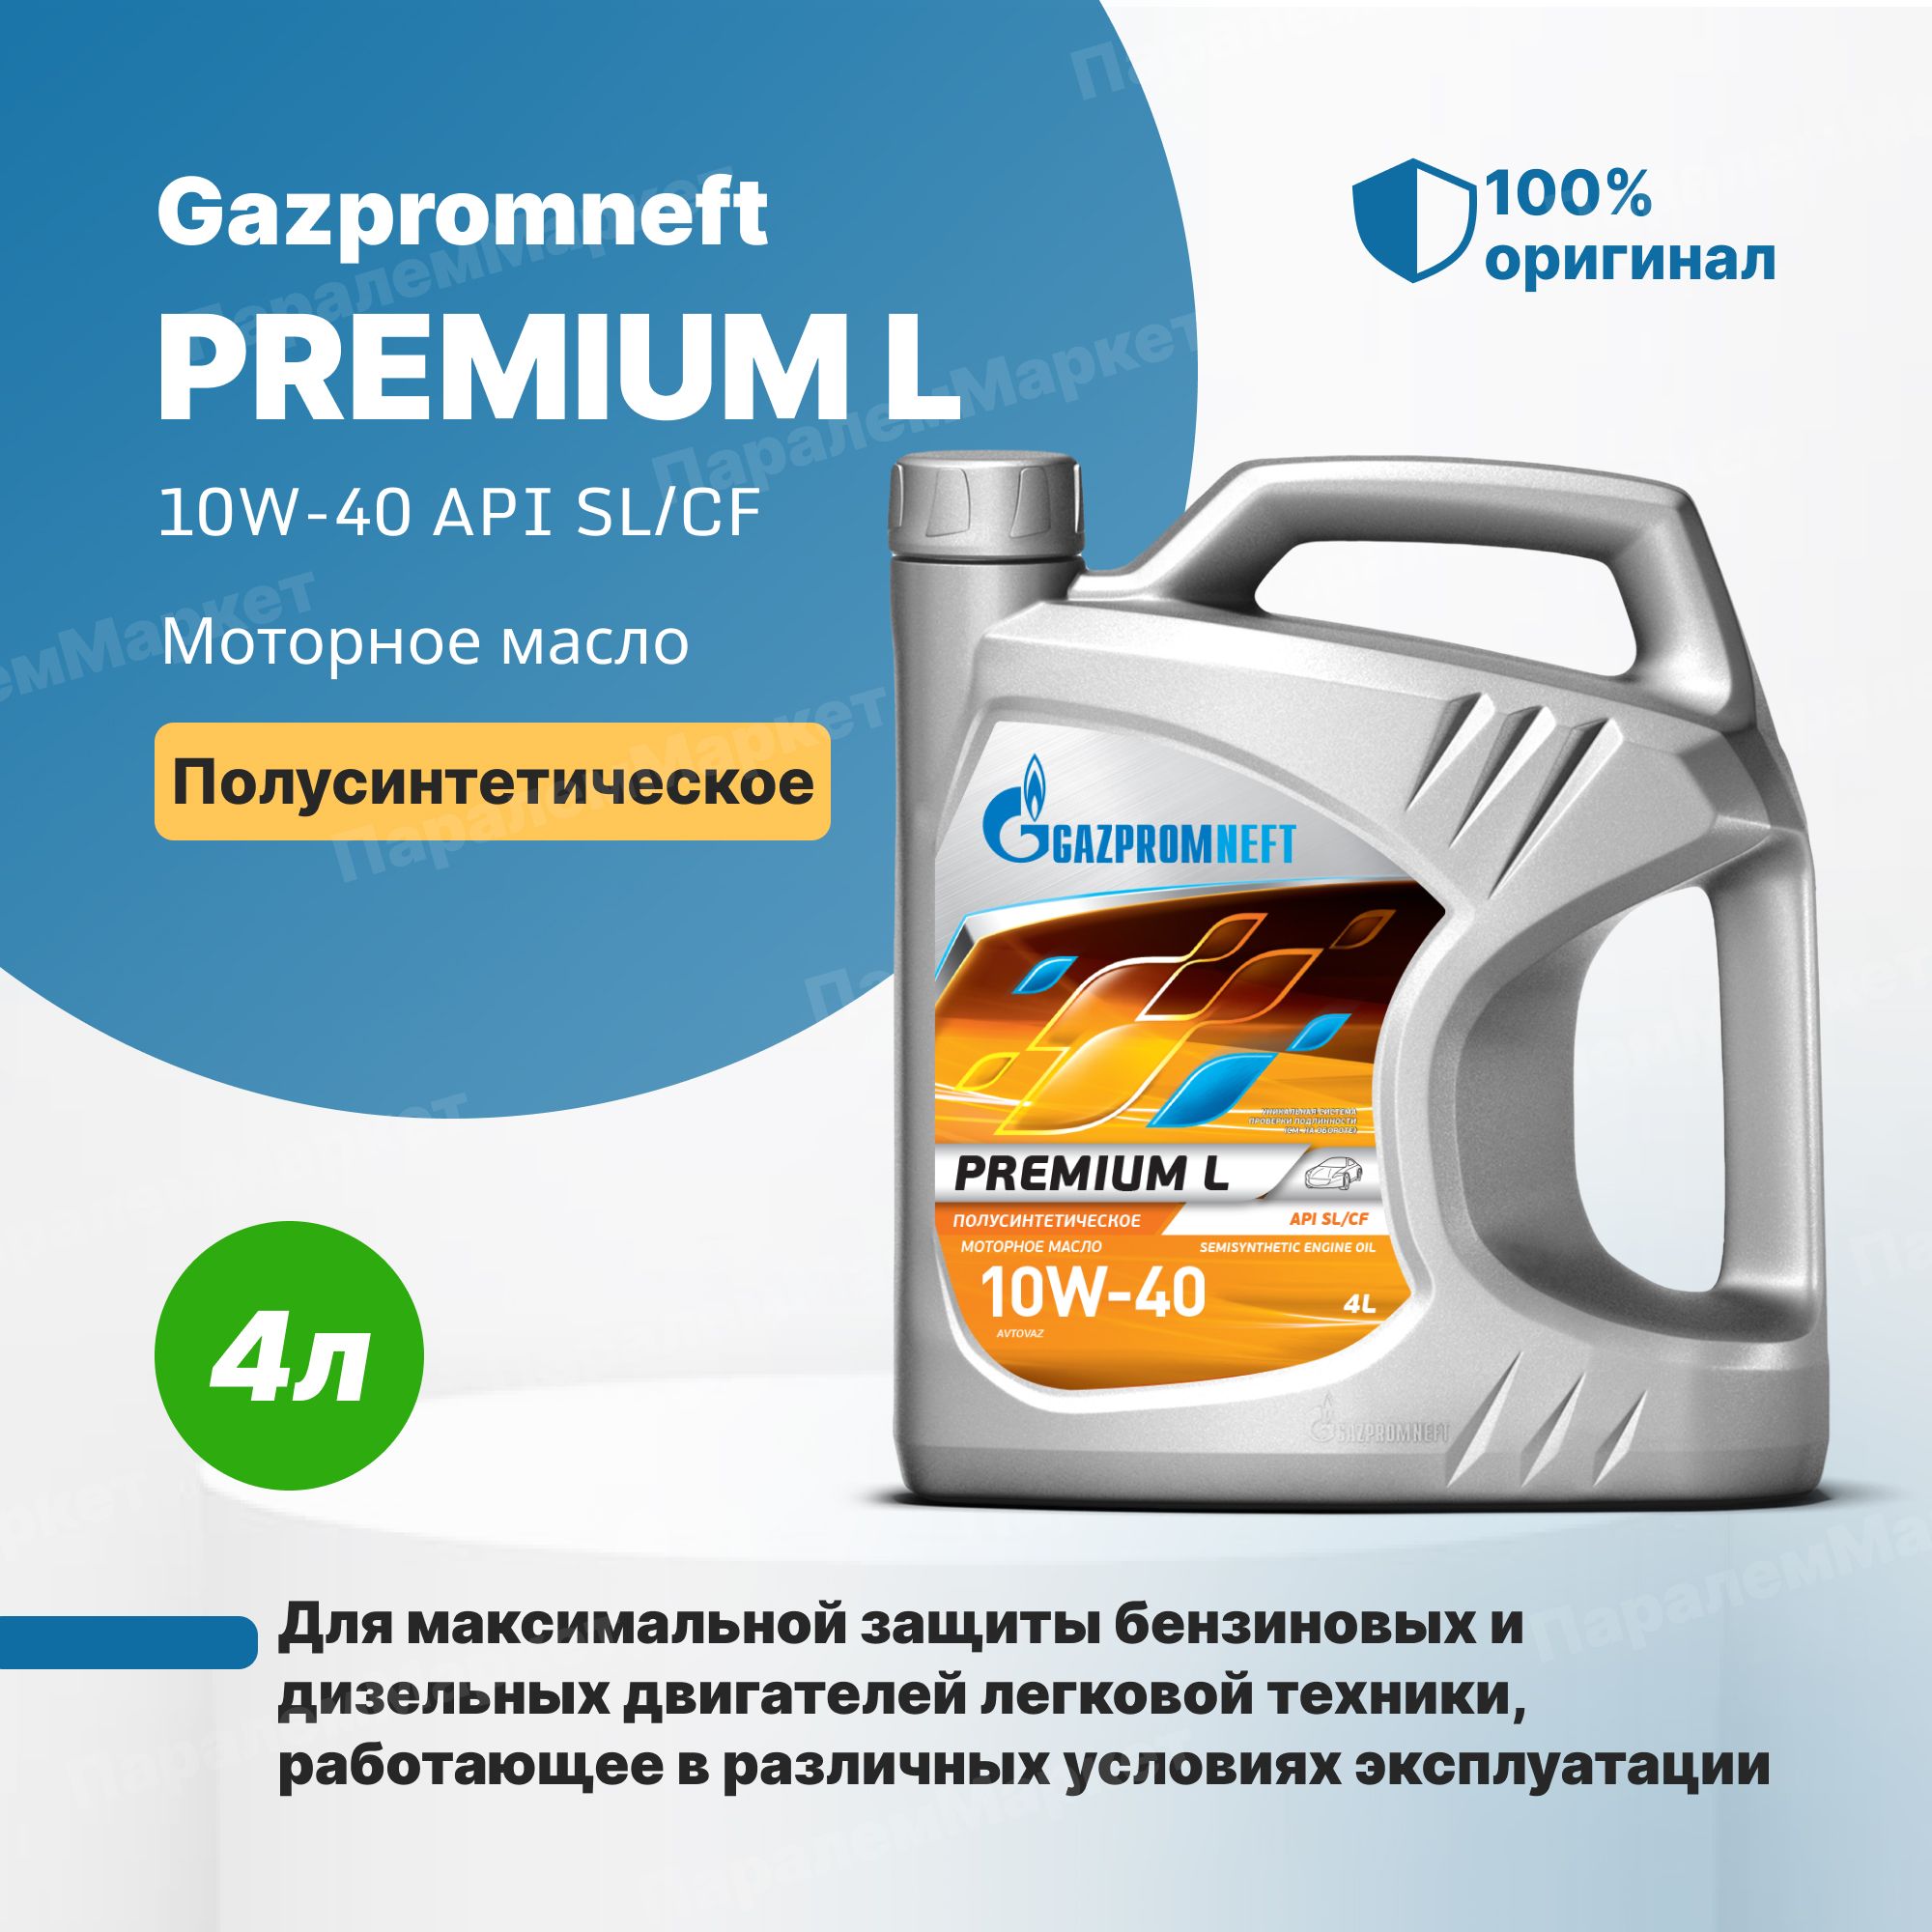 Масло gazpromneft premium l. Gazpromneft масло моторное Premium l 10w-40 полусинтетическое 4 л. Газпромнефть премиум л 10w-40. Масло Газпромнефть 10w 40 премиум л.